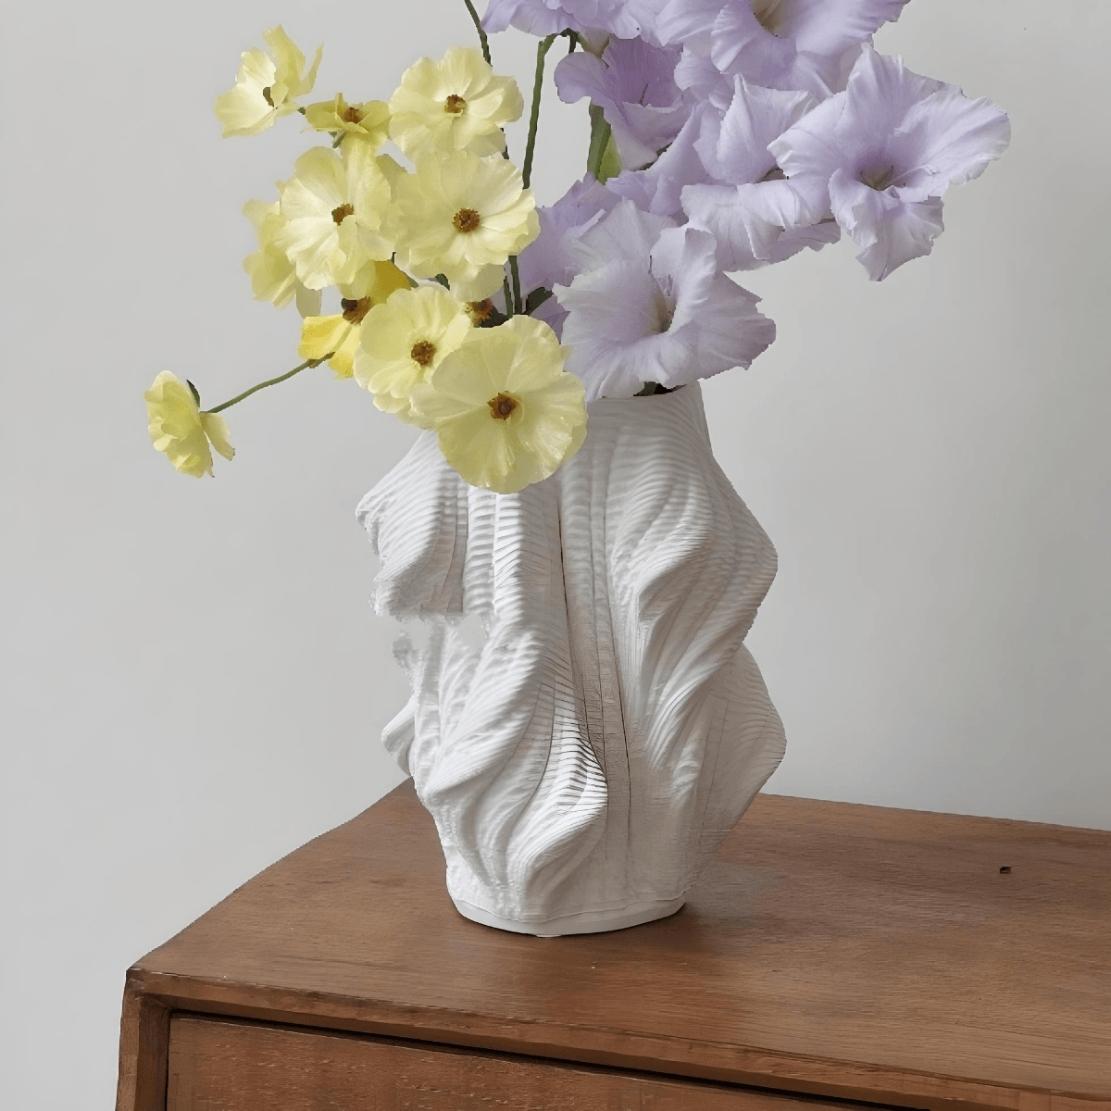 White, ceramic, wavy vase on wood shelf with flowers